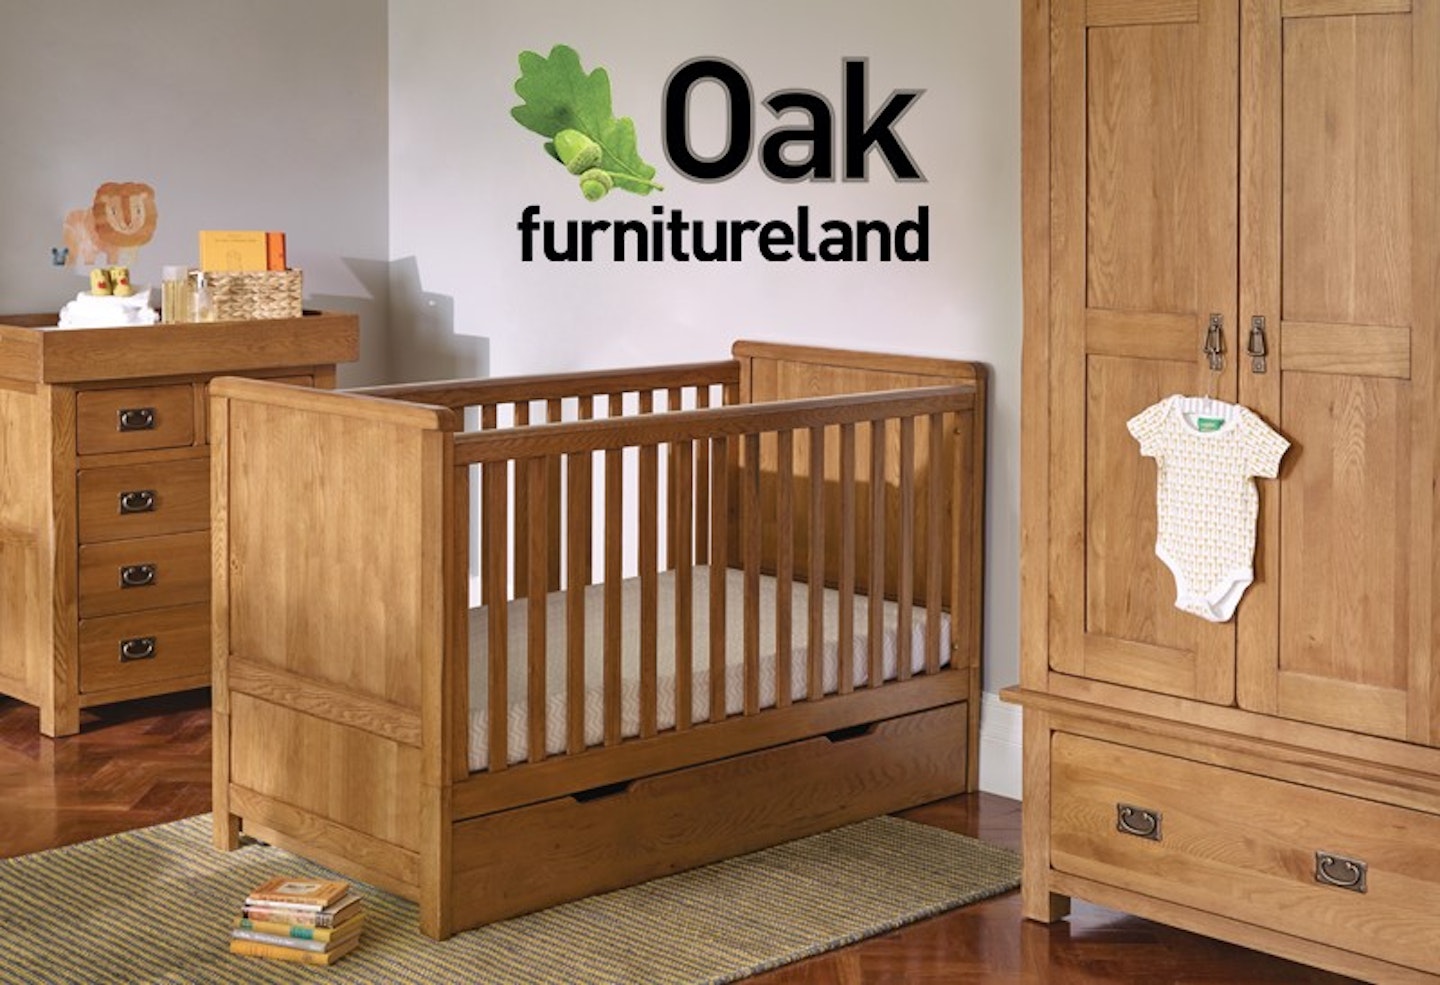 oak furniture land 